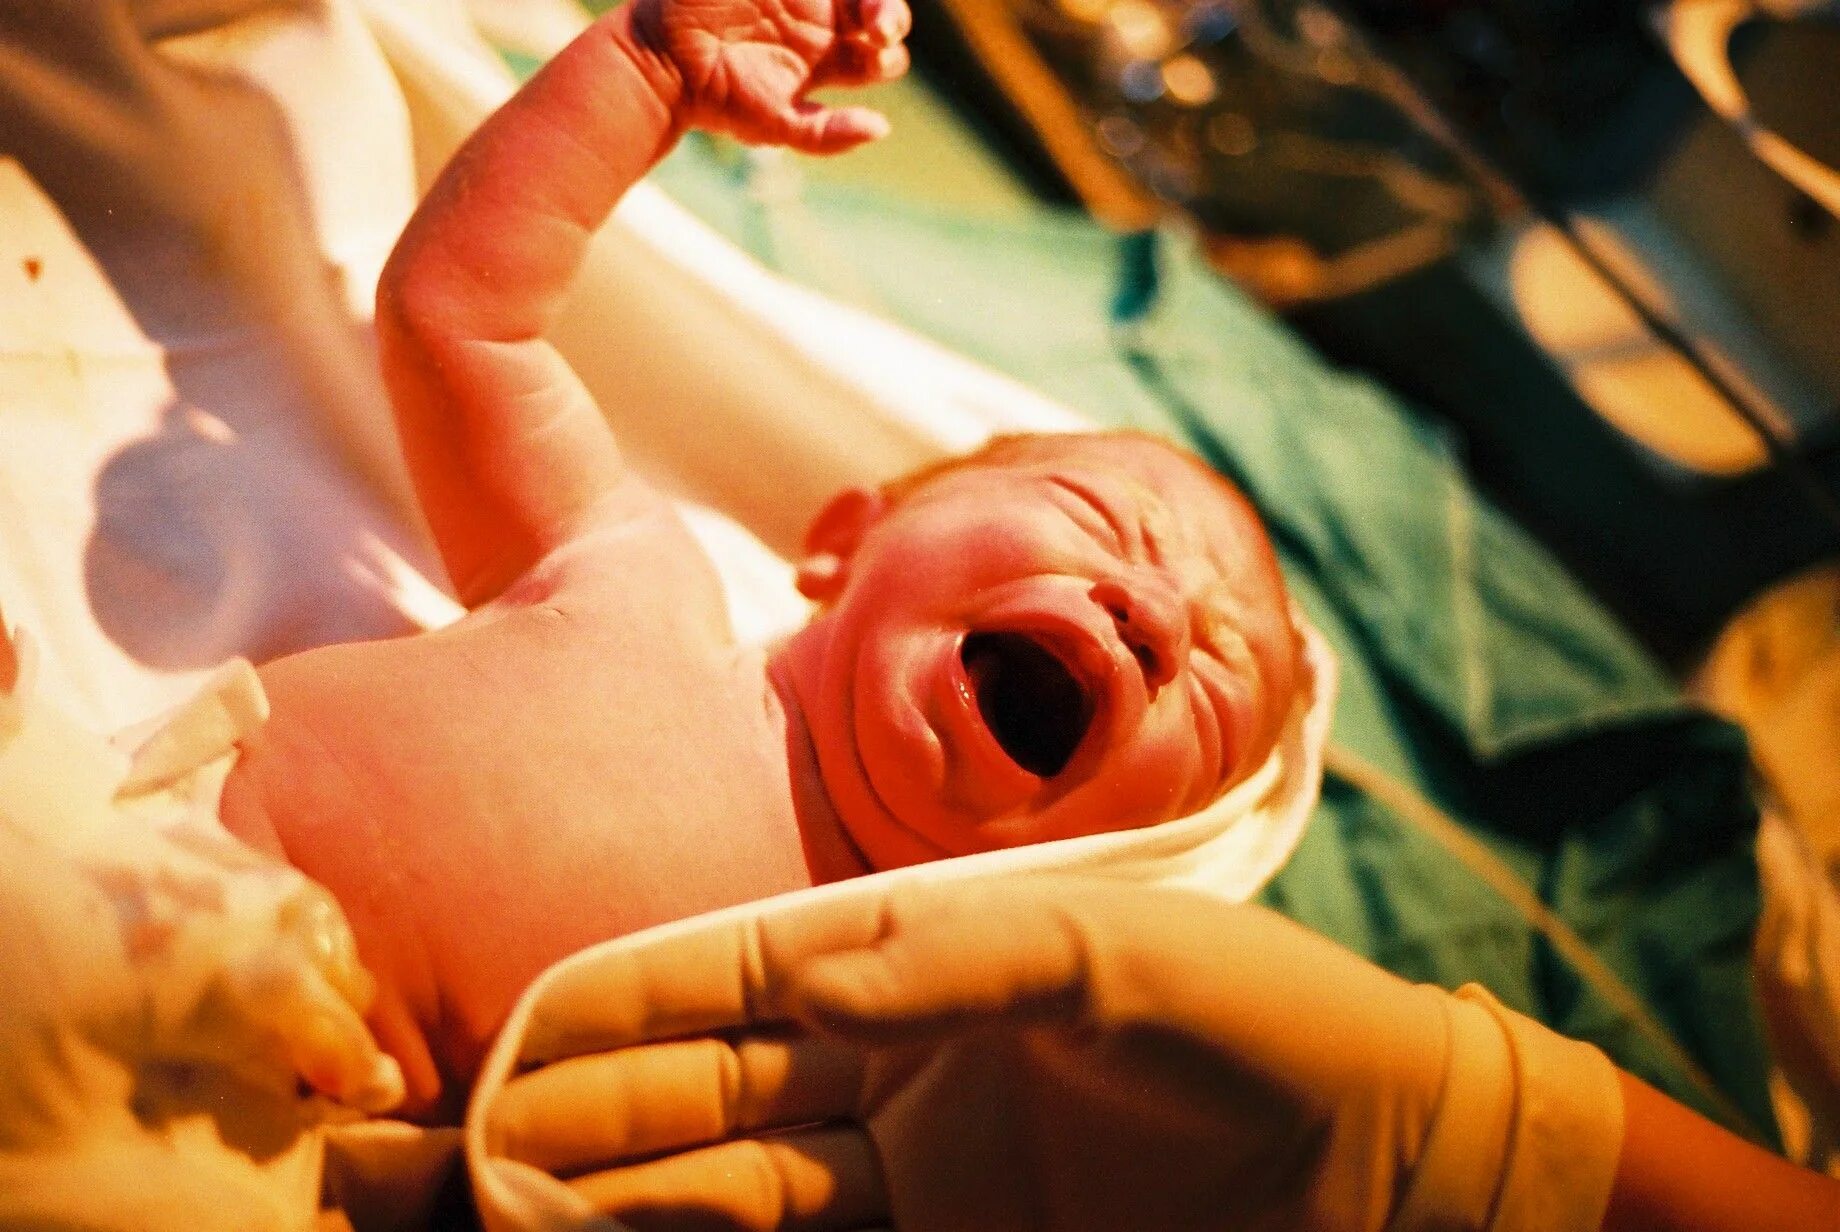 Первые в роду в ней нет души. Процесс рождения ребенка в роддоме. Новорожденный в родильном зале.